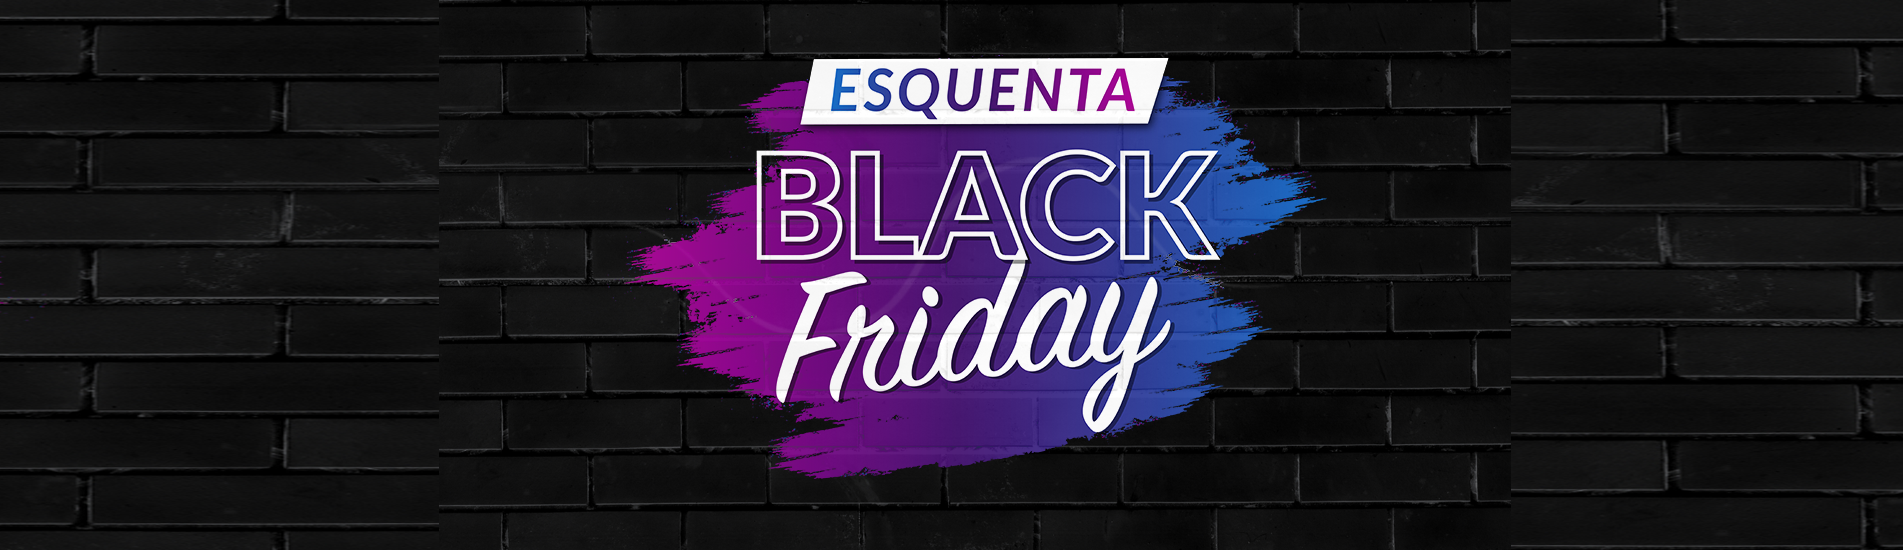 Esquenta Black Friday Teresina Shopping acontece de 23 a 27 de novembro.